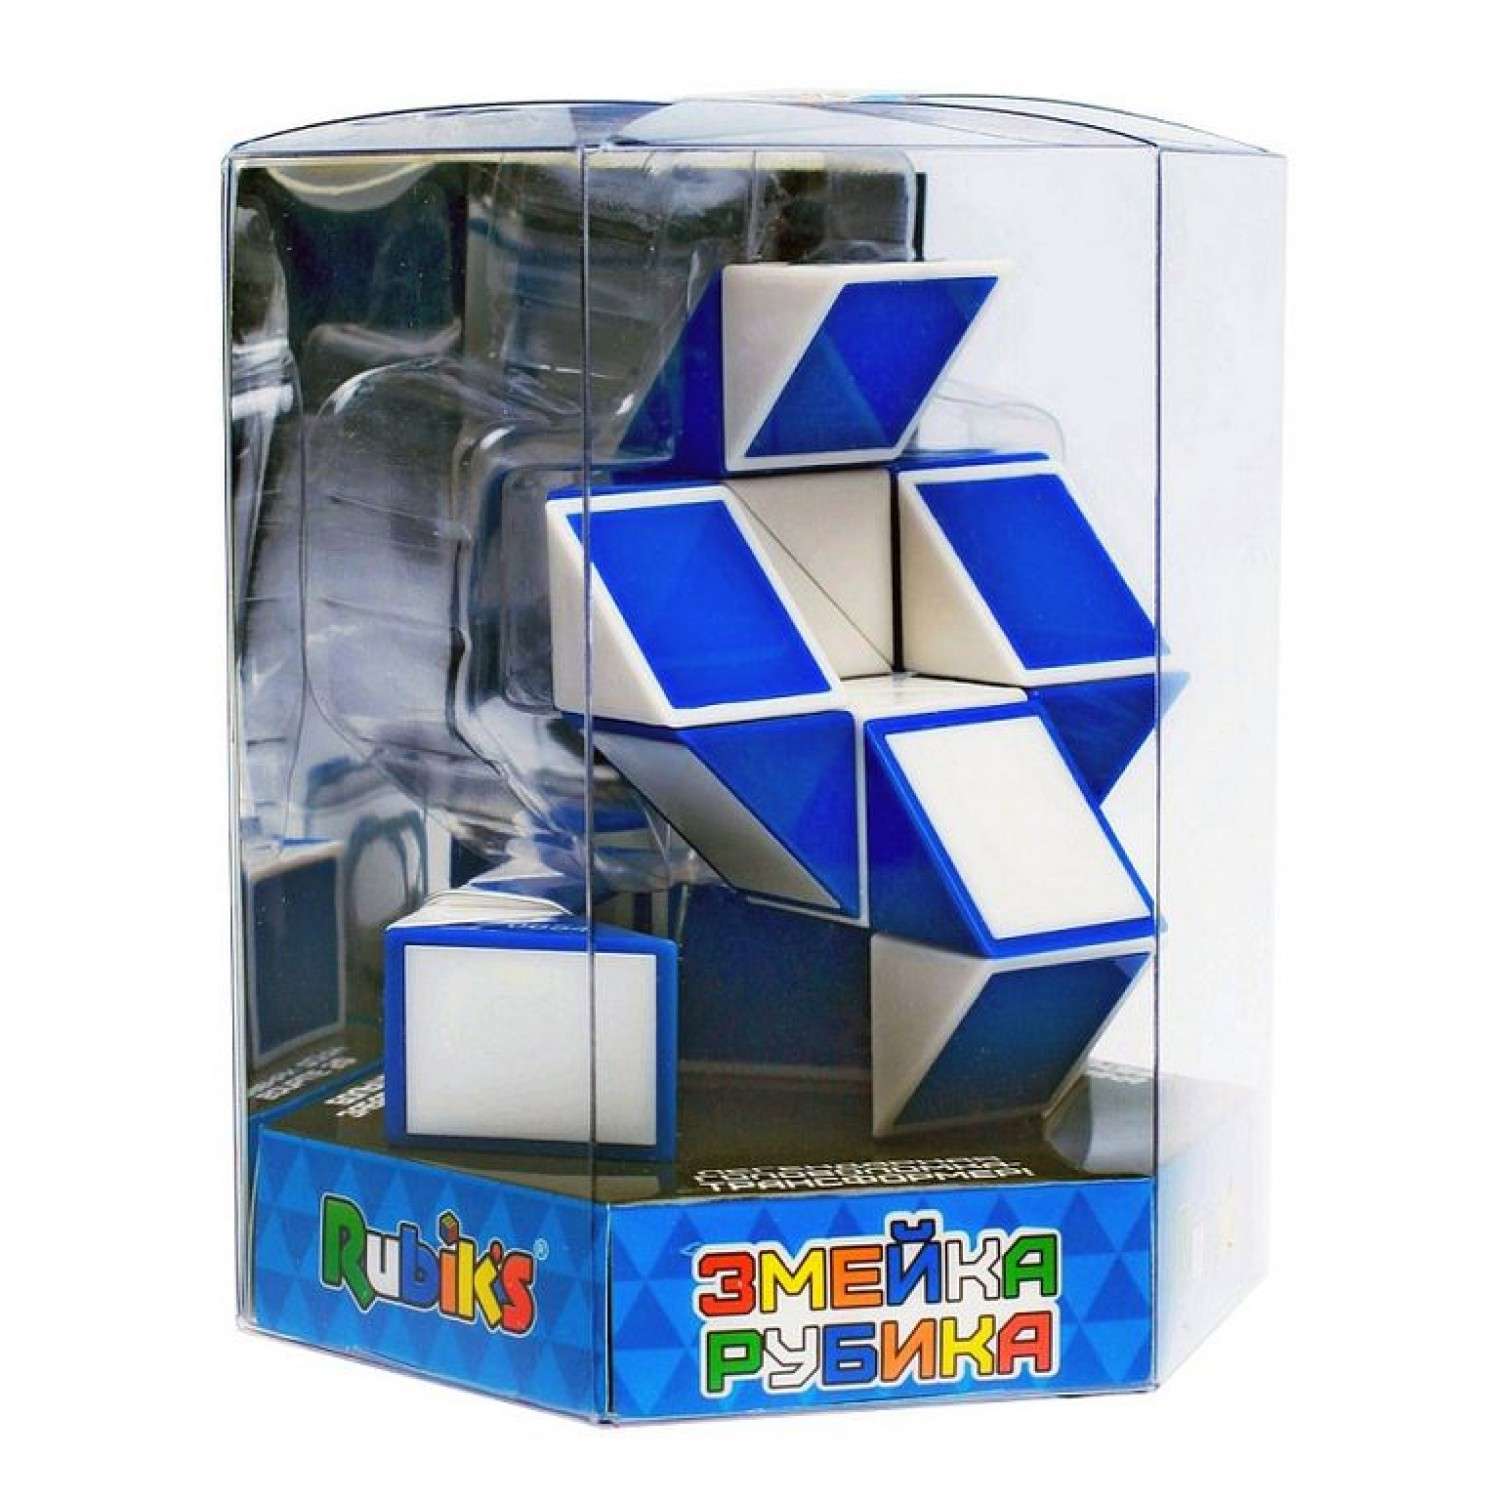 Головоломка Rubik`s Змейка большая 24 элемента - фото 4